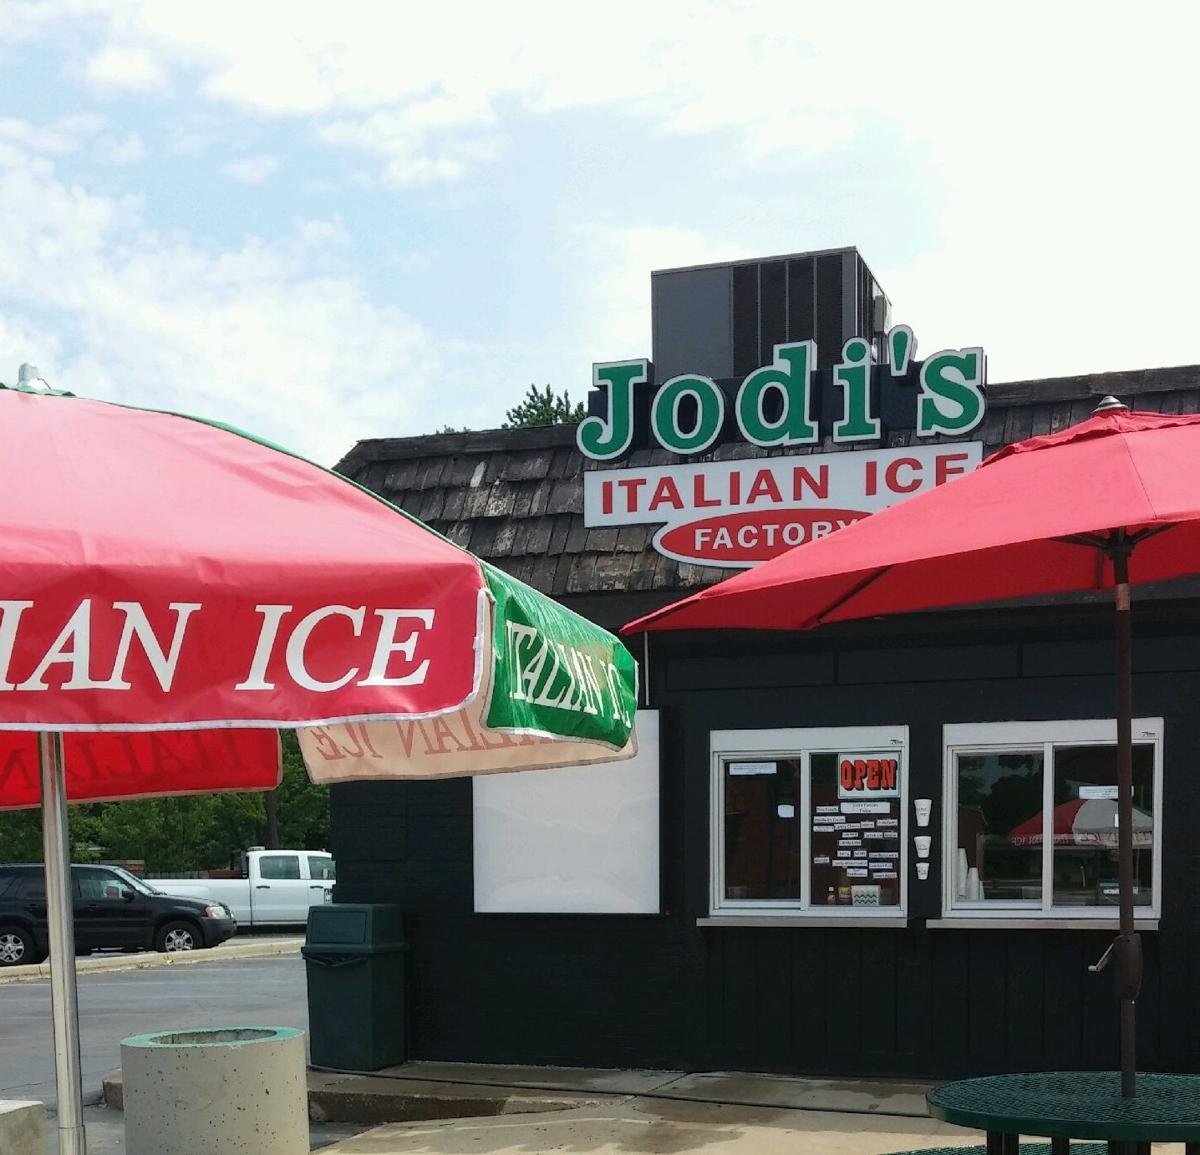 Restaurant Scene Jodis Italian Ice Factory Opens In Munster Restaurants 6168